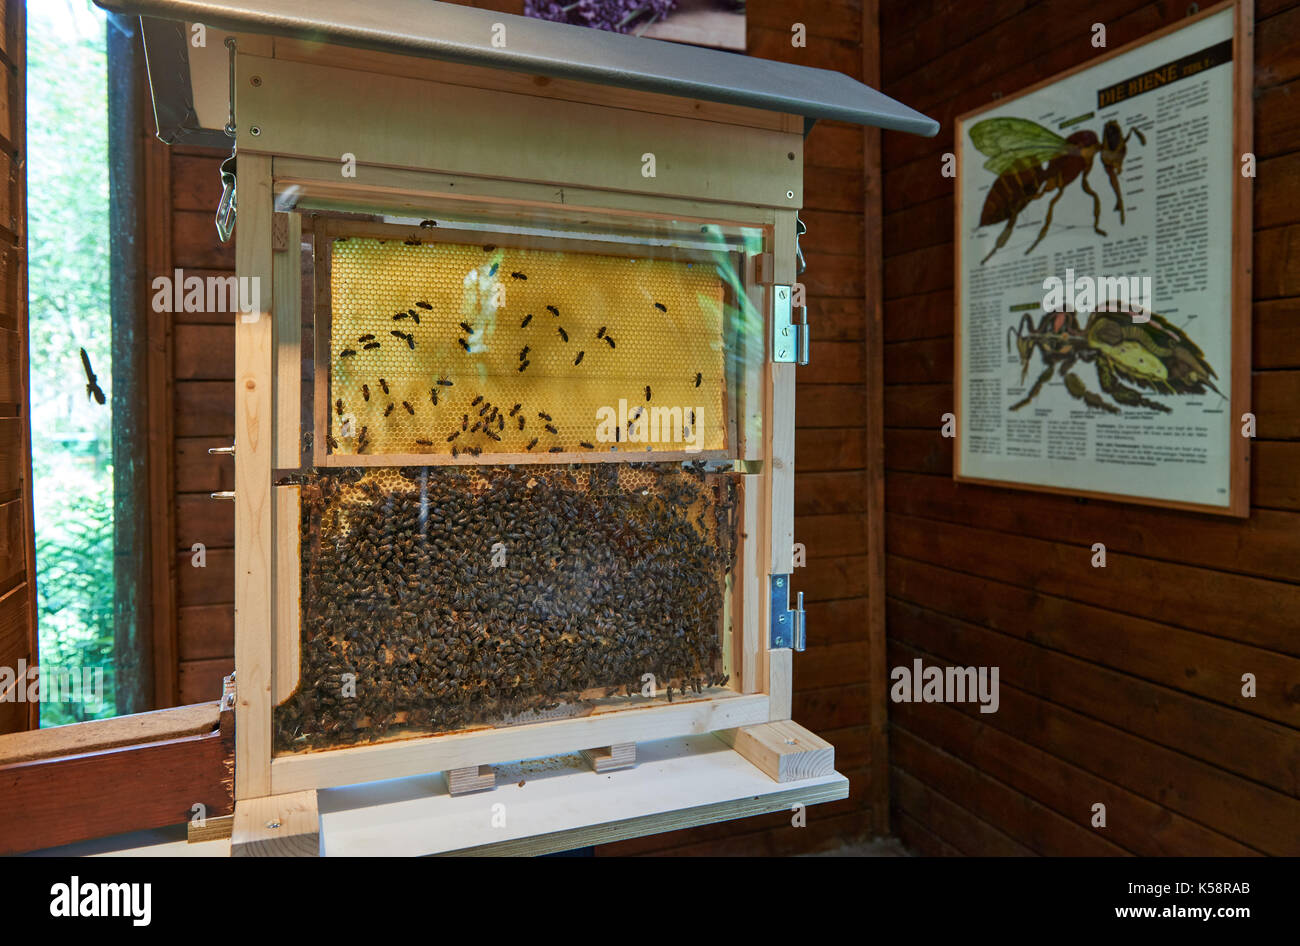 Nid d'abeilles et derrière une vitre dans une exposition avec l'école d'affichage Banque D'Images